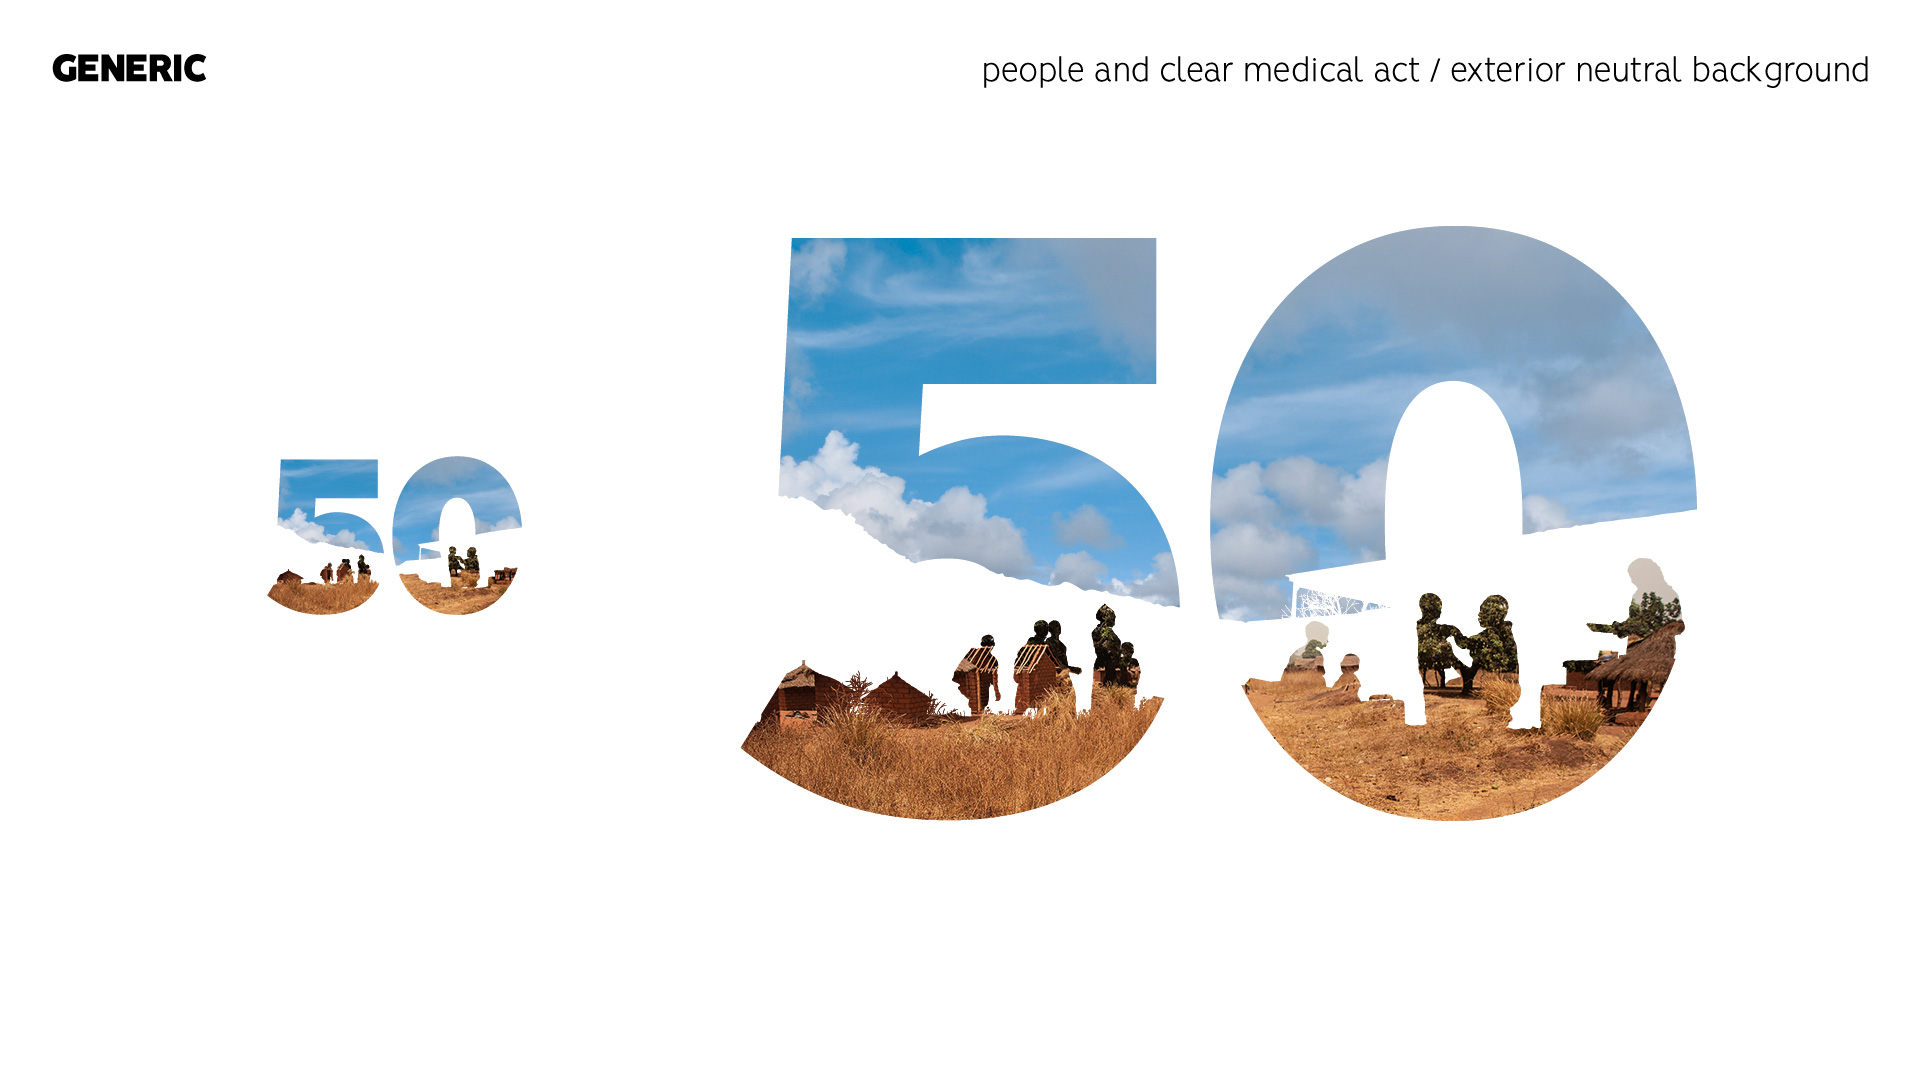 MSF 50 ans d’humanité